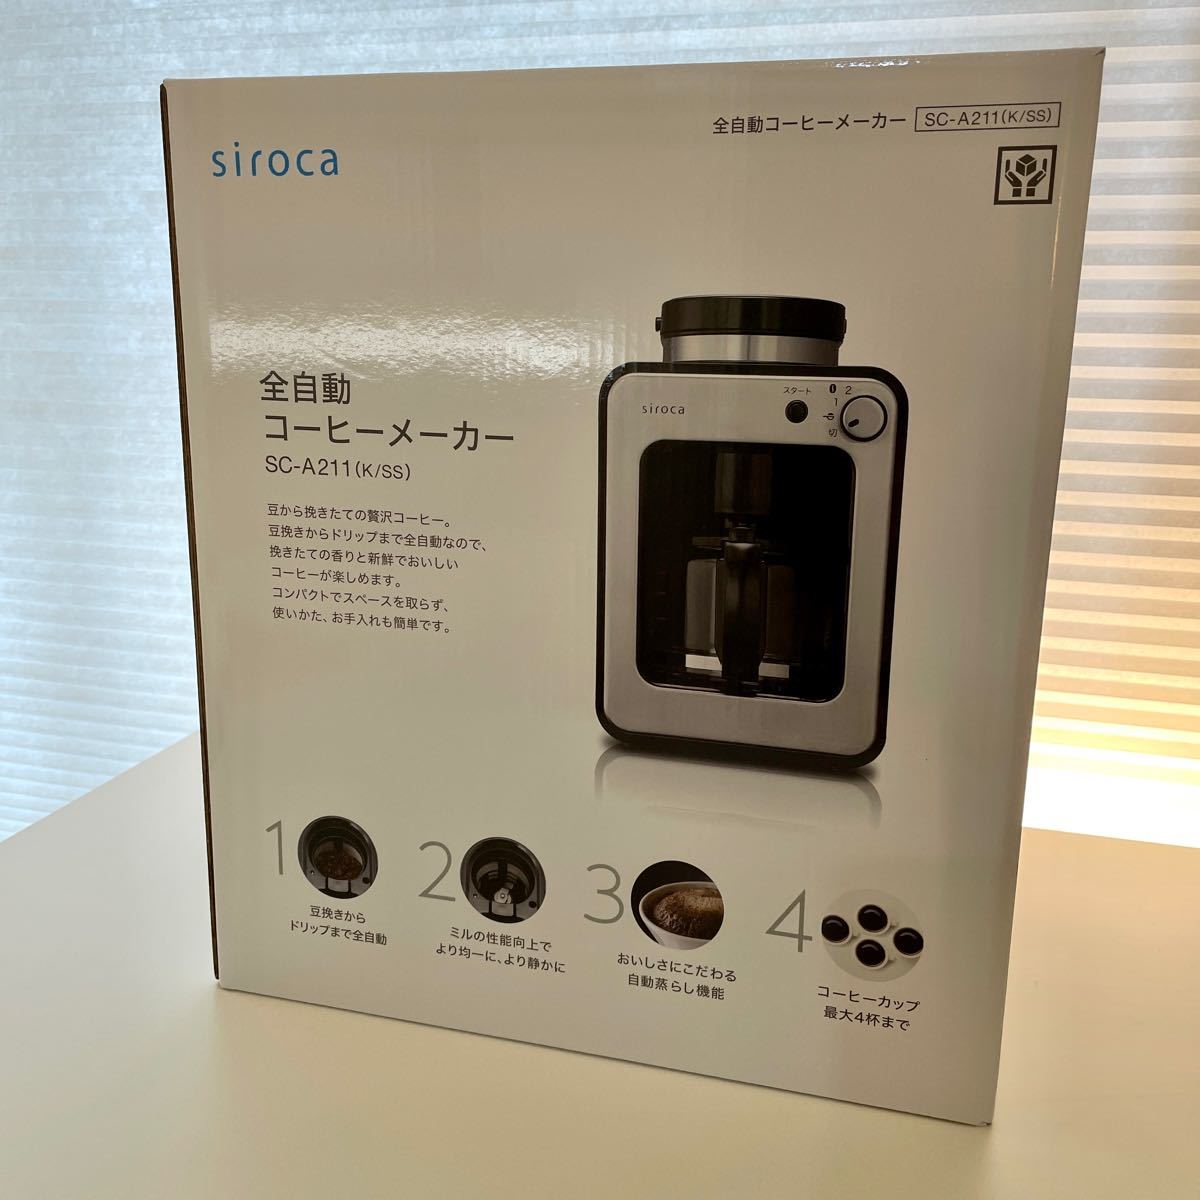 シロカ siroca 全自動コーヒーメーカー SC-A211